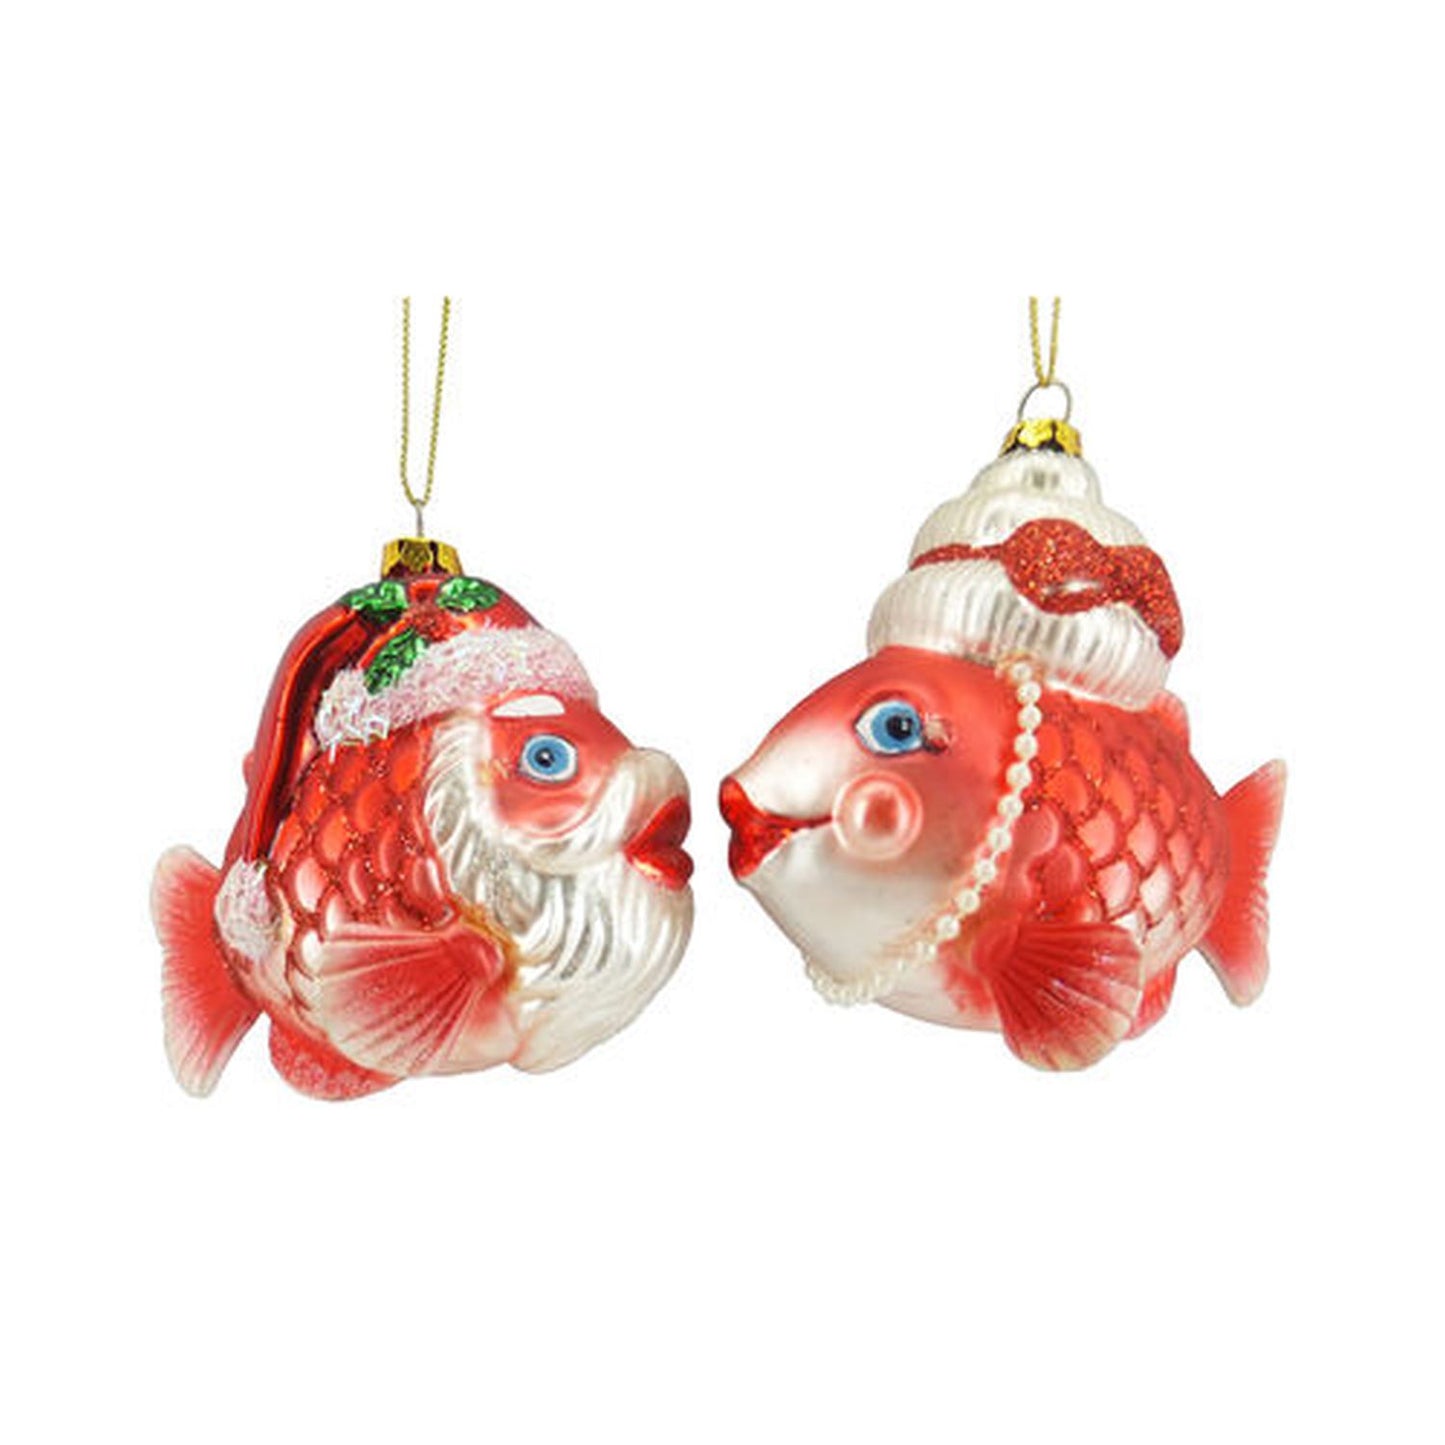 Tropical Ornaments Set Of 2 Assortment 4" Mr & Mrs Santa Fish Ornaments